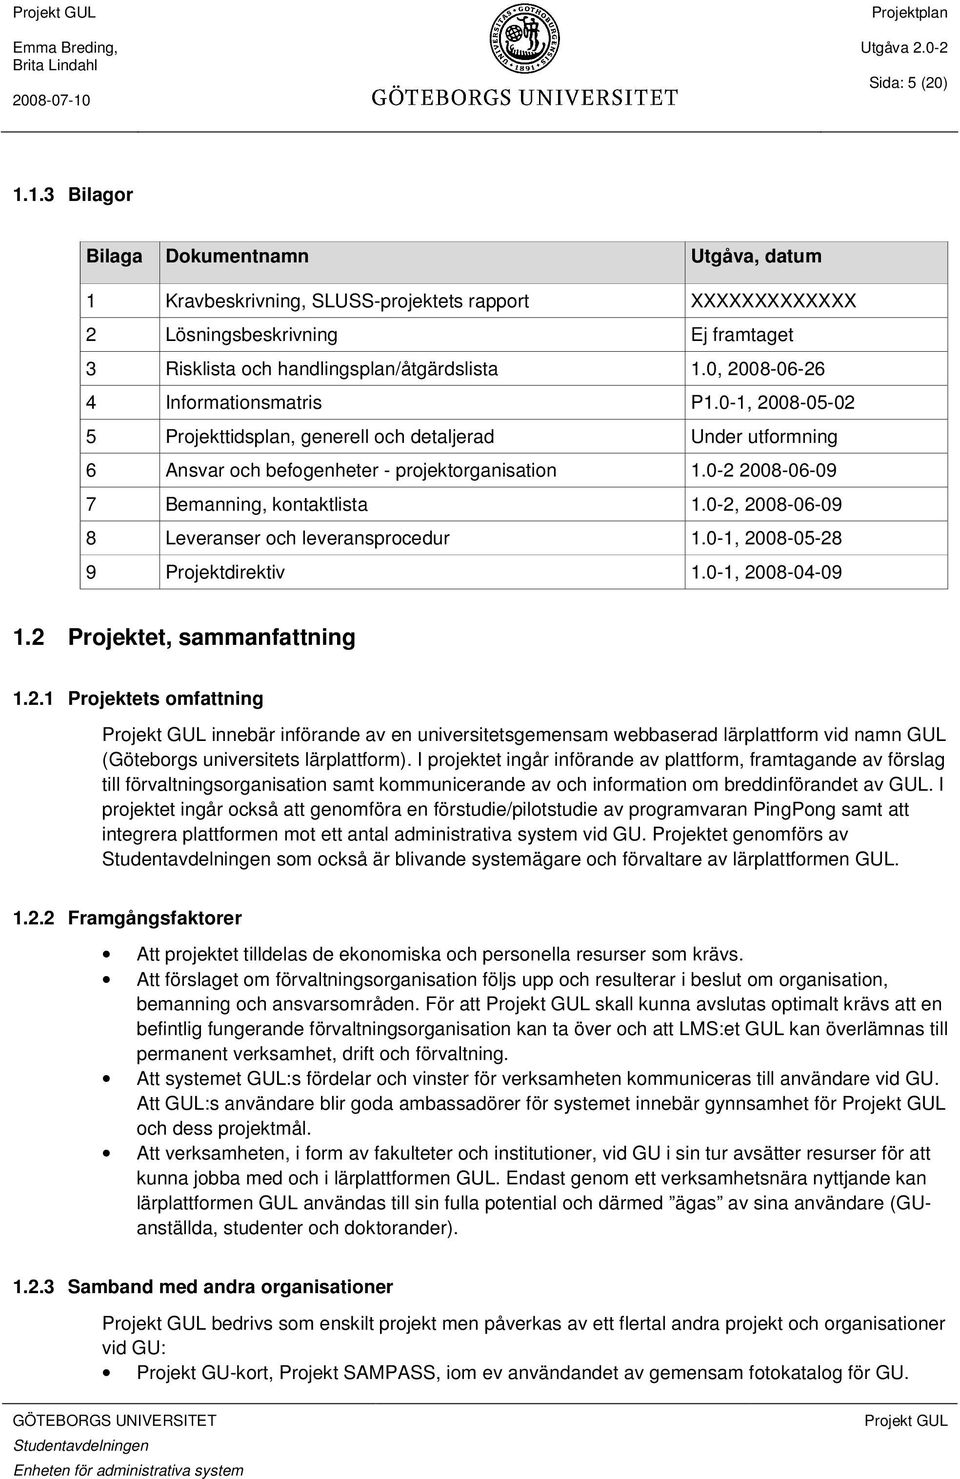 0-2 2008-06-09 7 Bemanning, kontaktlista 1.0-2, 2008-06-09 8 Leveranser och leveransprocedur 1.0-1, 2008-05-28 9 Projektdirektiv 1.0-1, 2008-04-09 1.2 Projektet, sammanfattning 1.2.1 Projektets omfattning innebär införande av en universitetsgemensam webbaserad lärplattform vid namn GUL (Göteborgs universitets lärplattform).